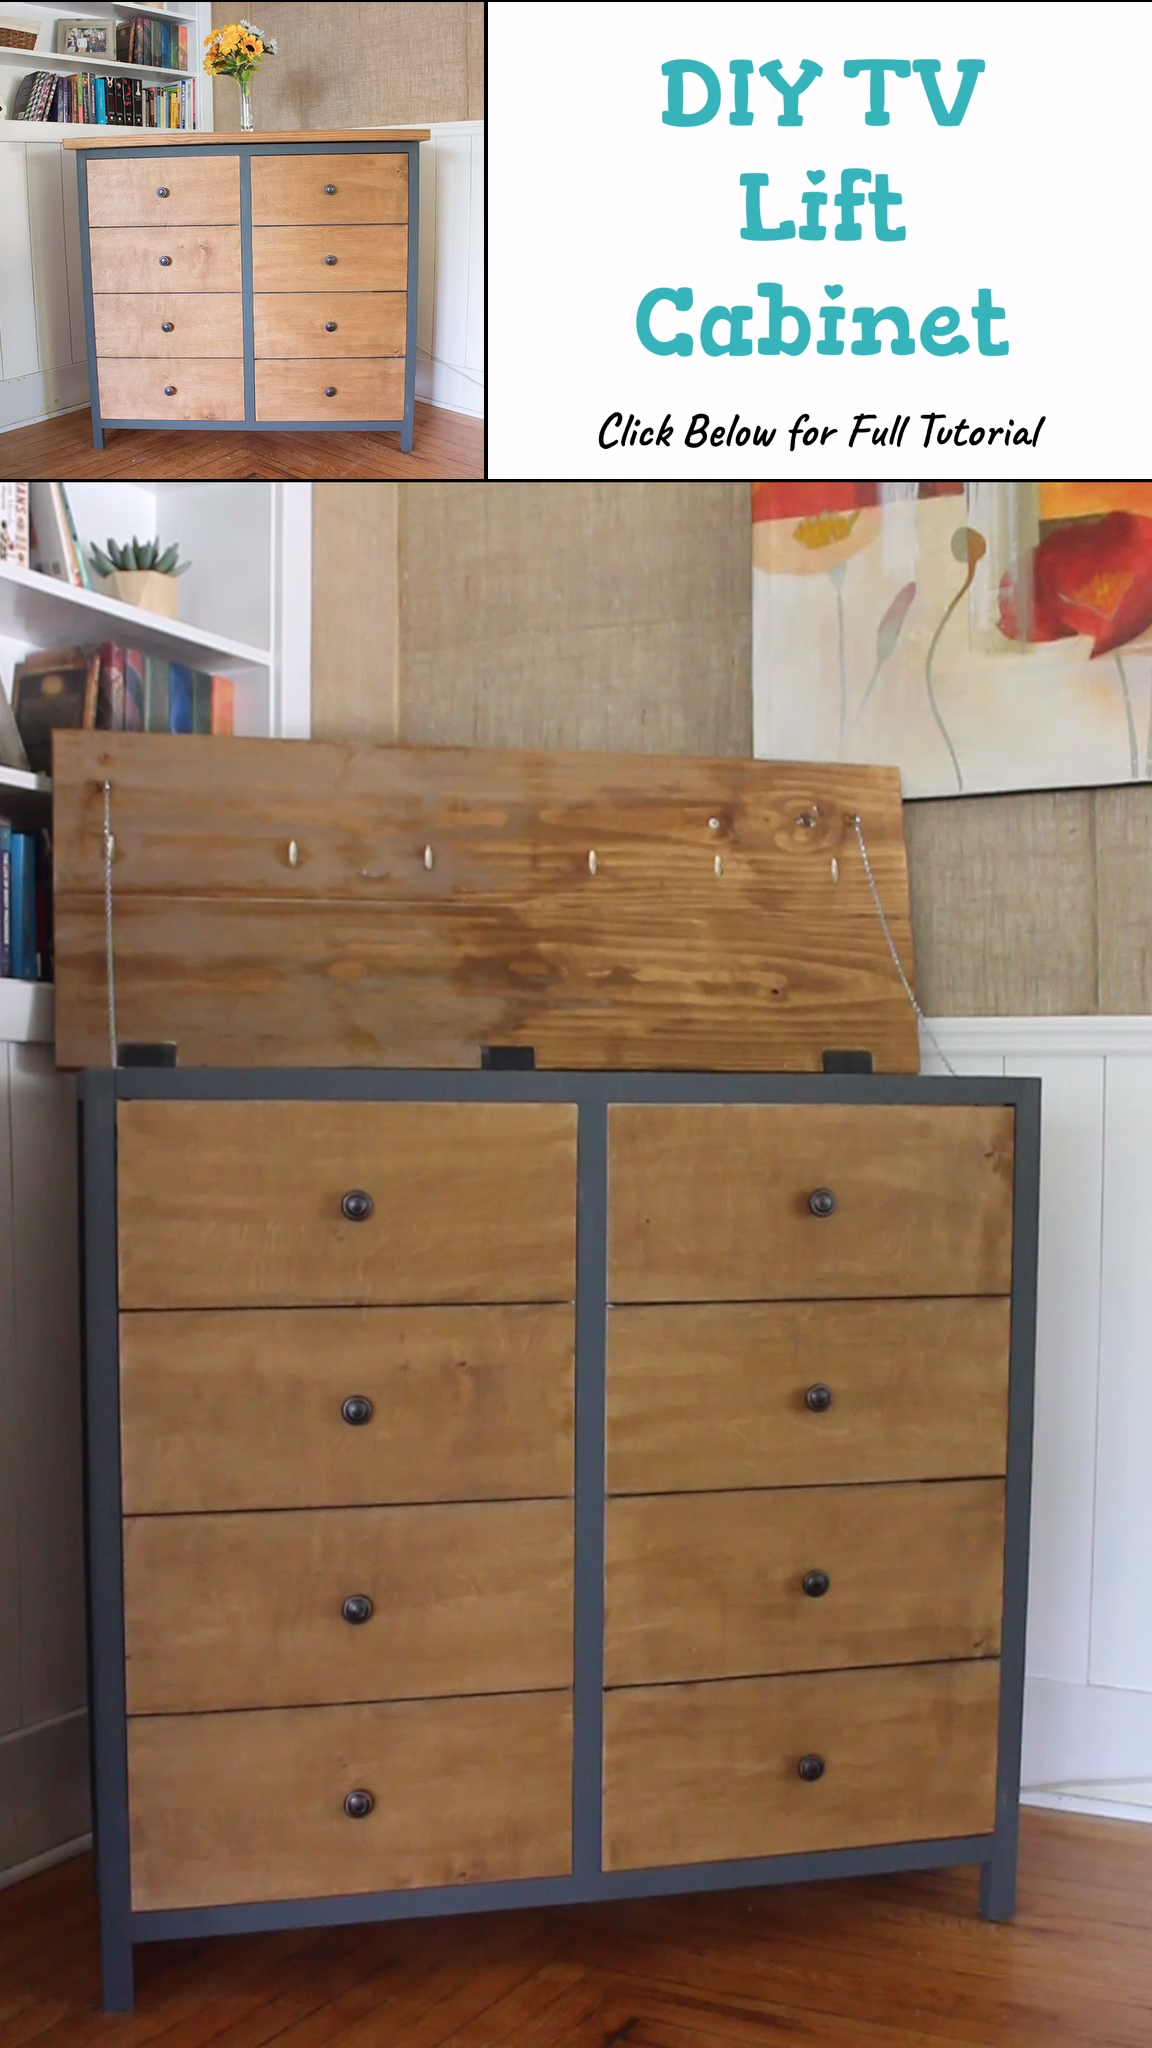 DIY TV Lift Cabinet - DIY TV Lift Cabinet -   18 diy Furniture ikea ideas